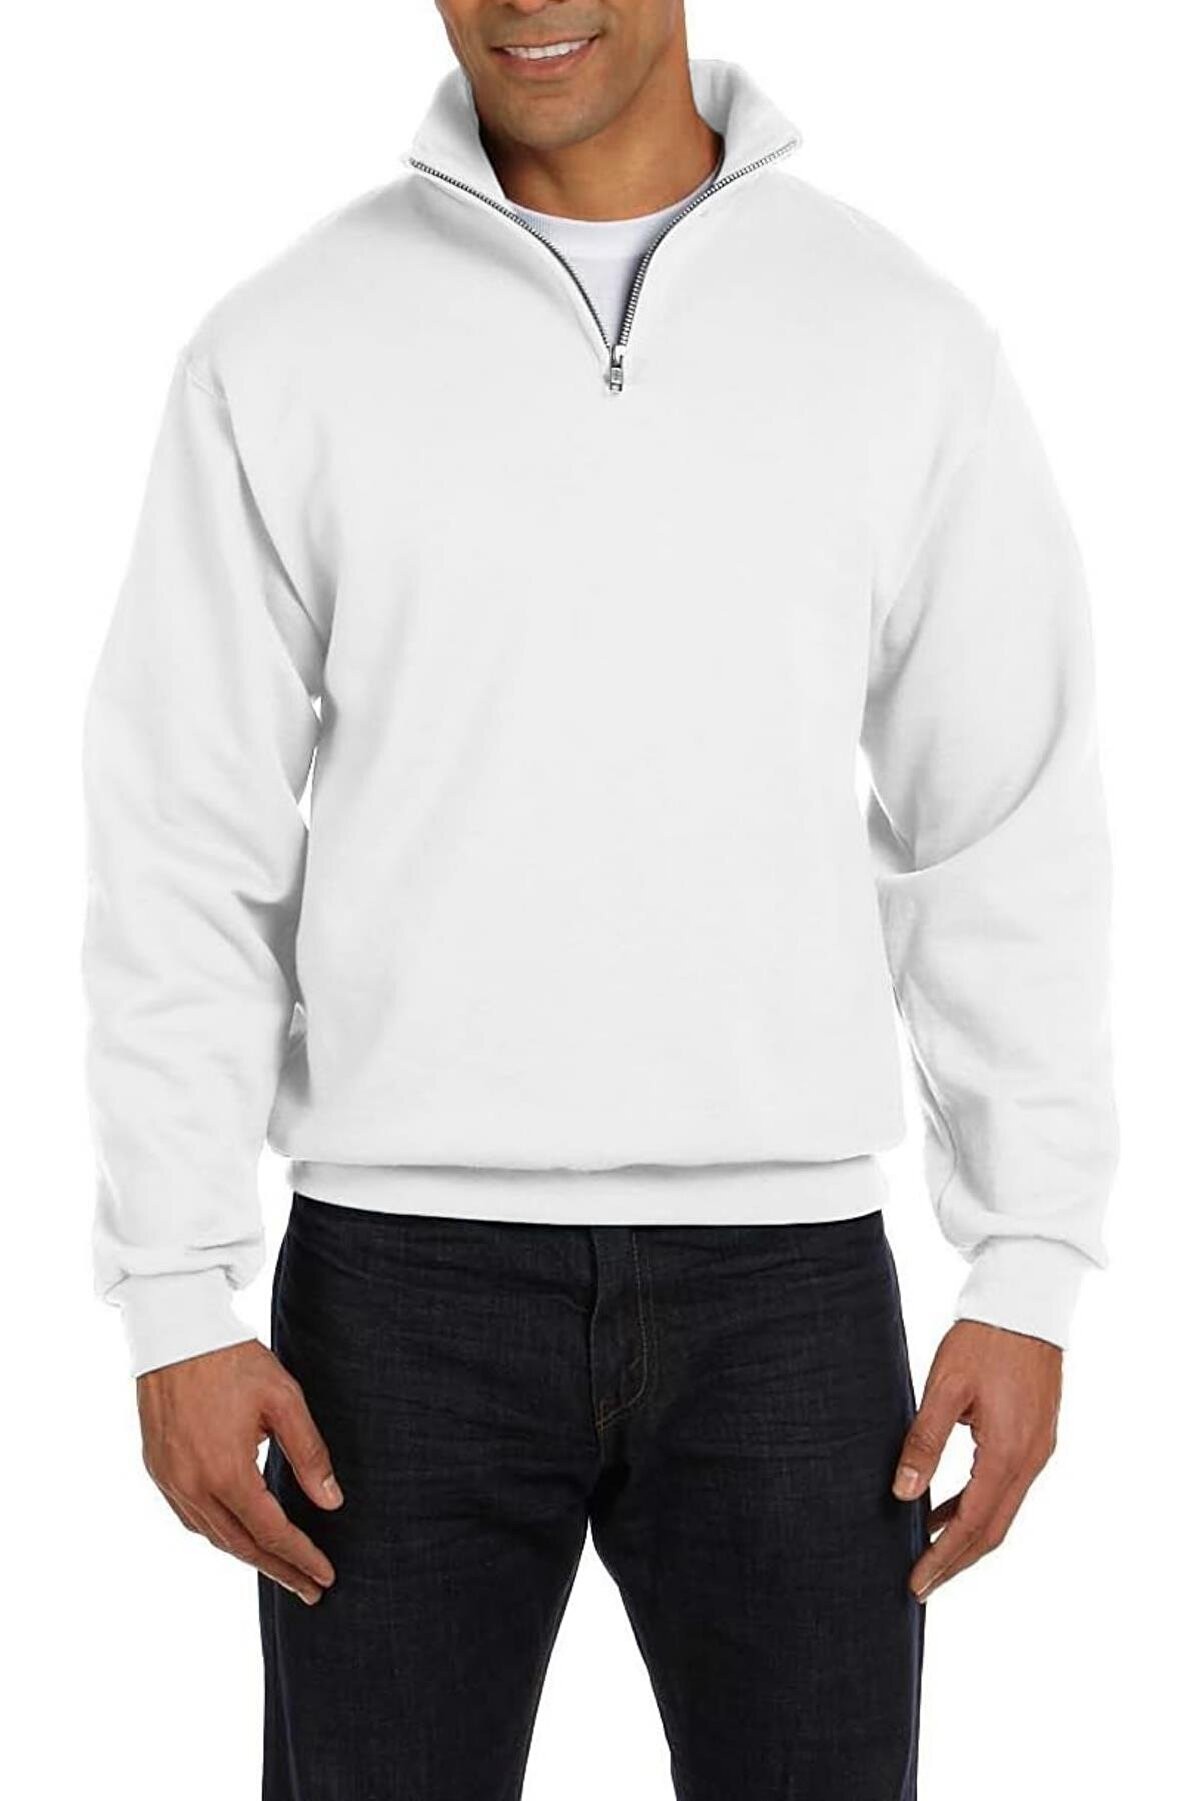 Ghassy Co Erkek Dik Yaka Silver Yarım Fermuarlı Sweatshirt - BEYAZ